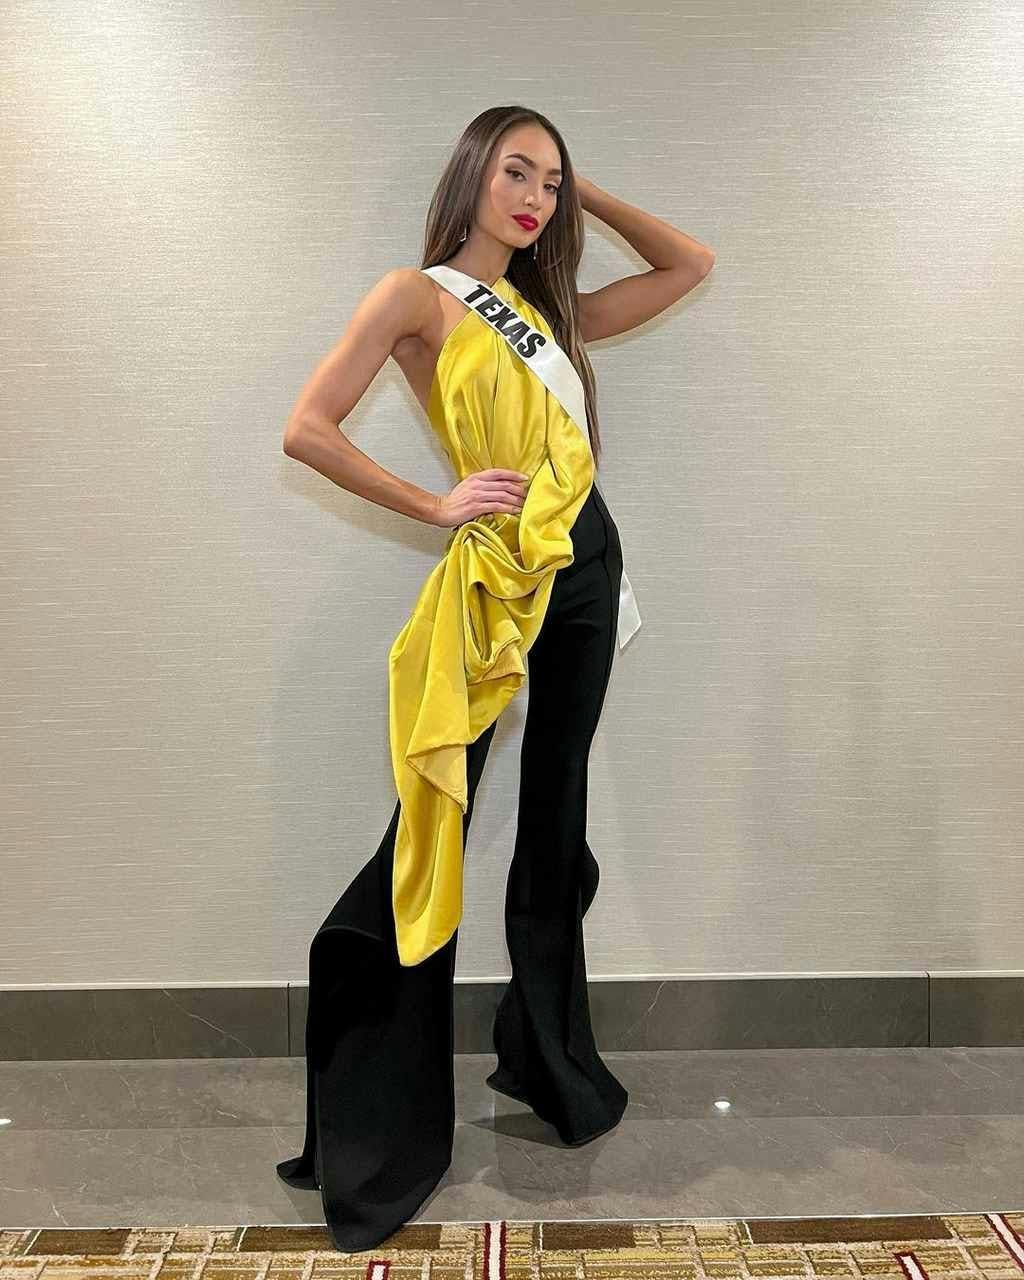 R’Bonney Nola a nova Miss EUA 2022 (Foto: reprodução/instagram)